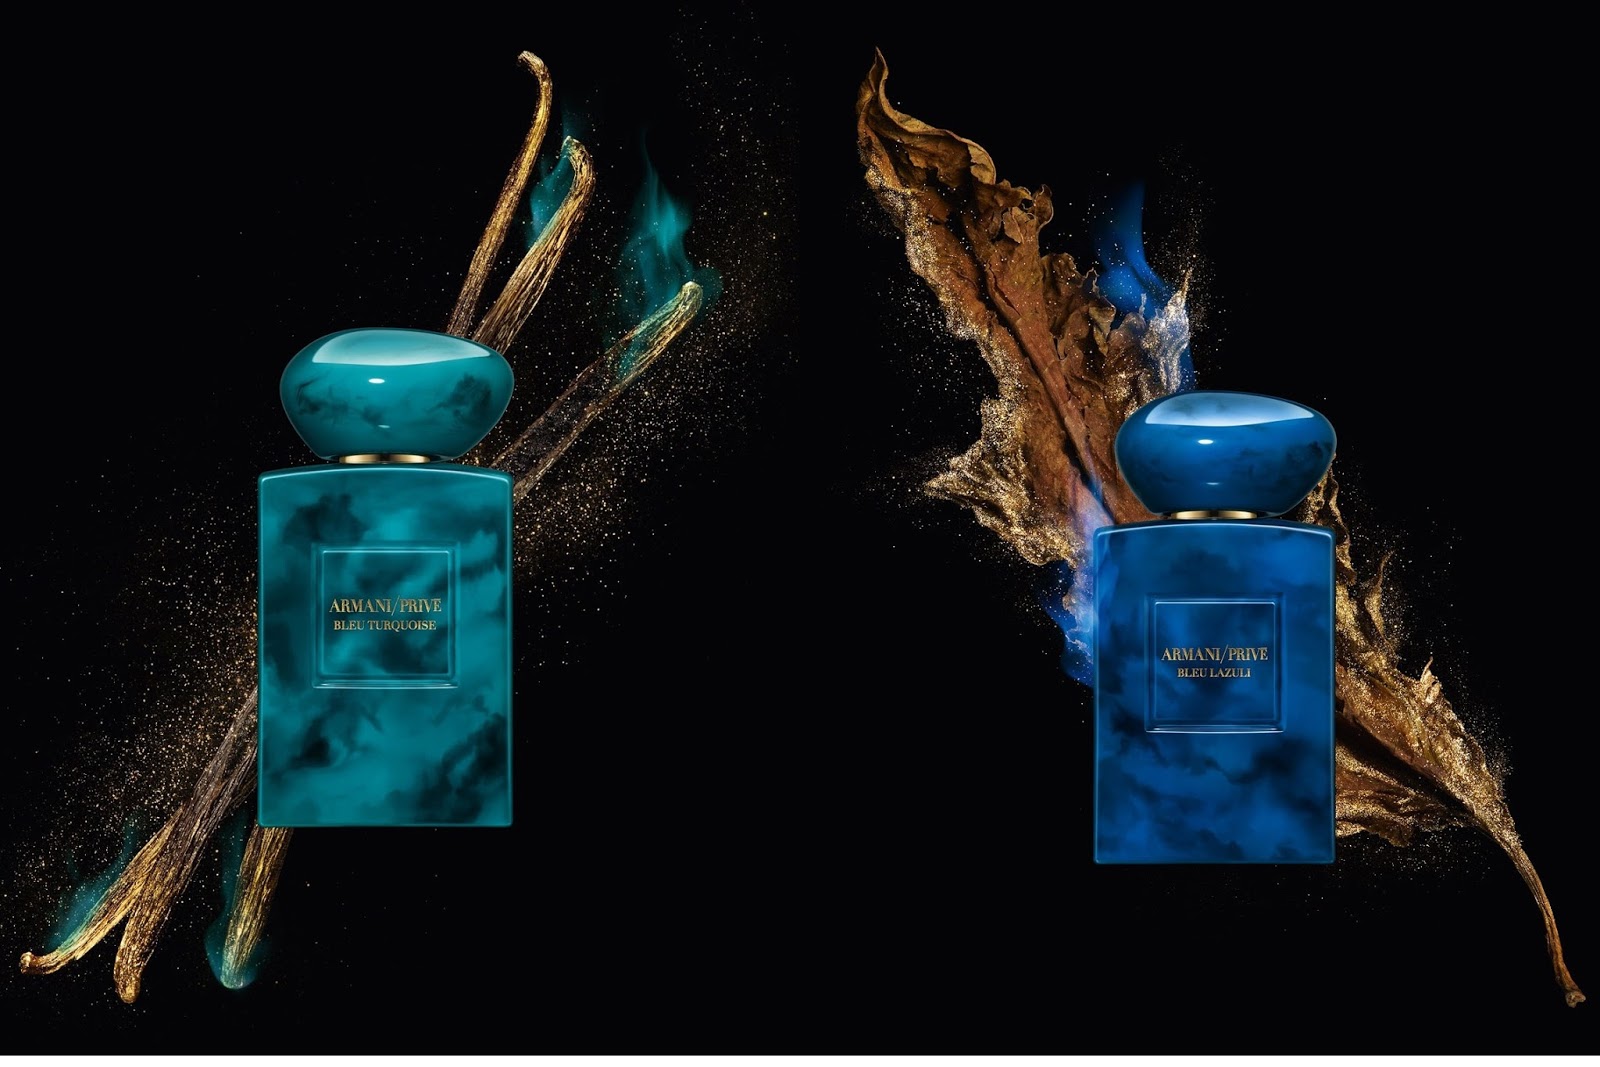 NEWS: Bleu Turquoise & Bleu Lazuli, Armani Privé (2018) .